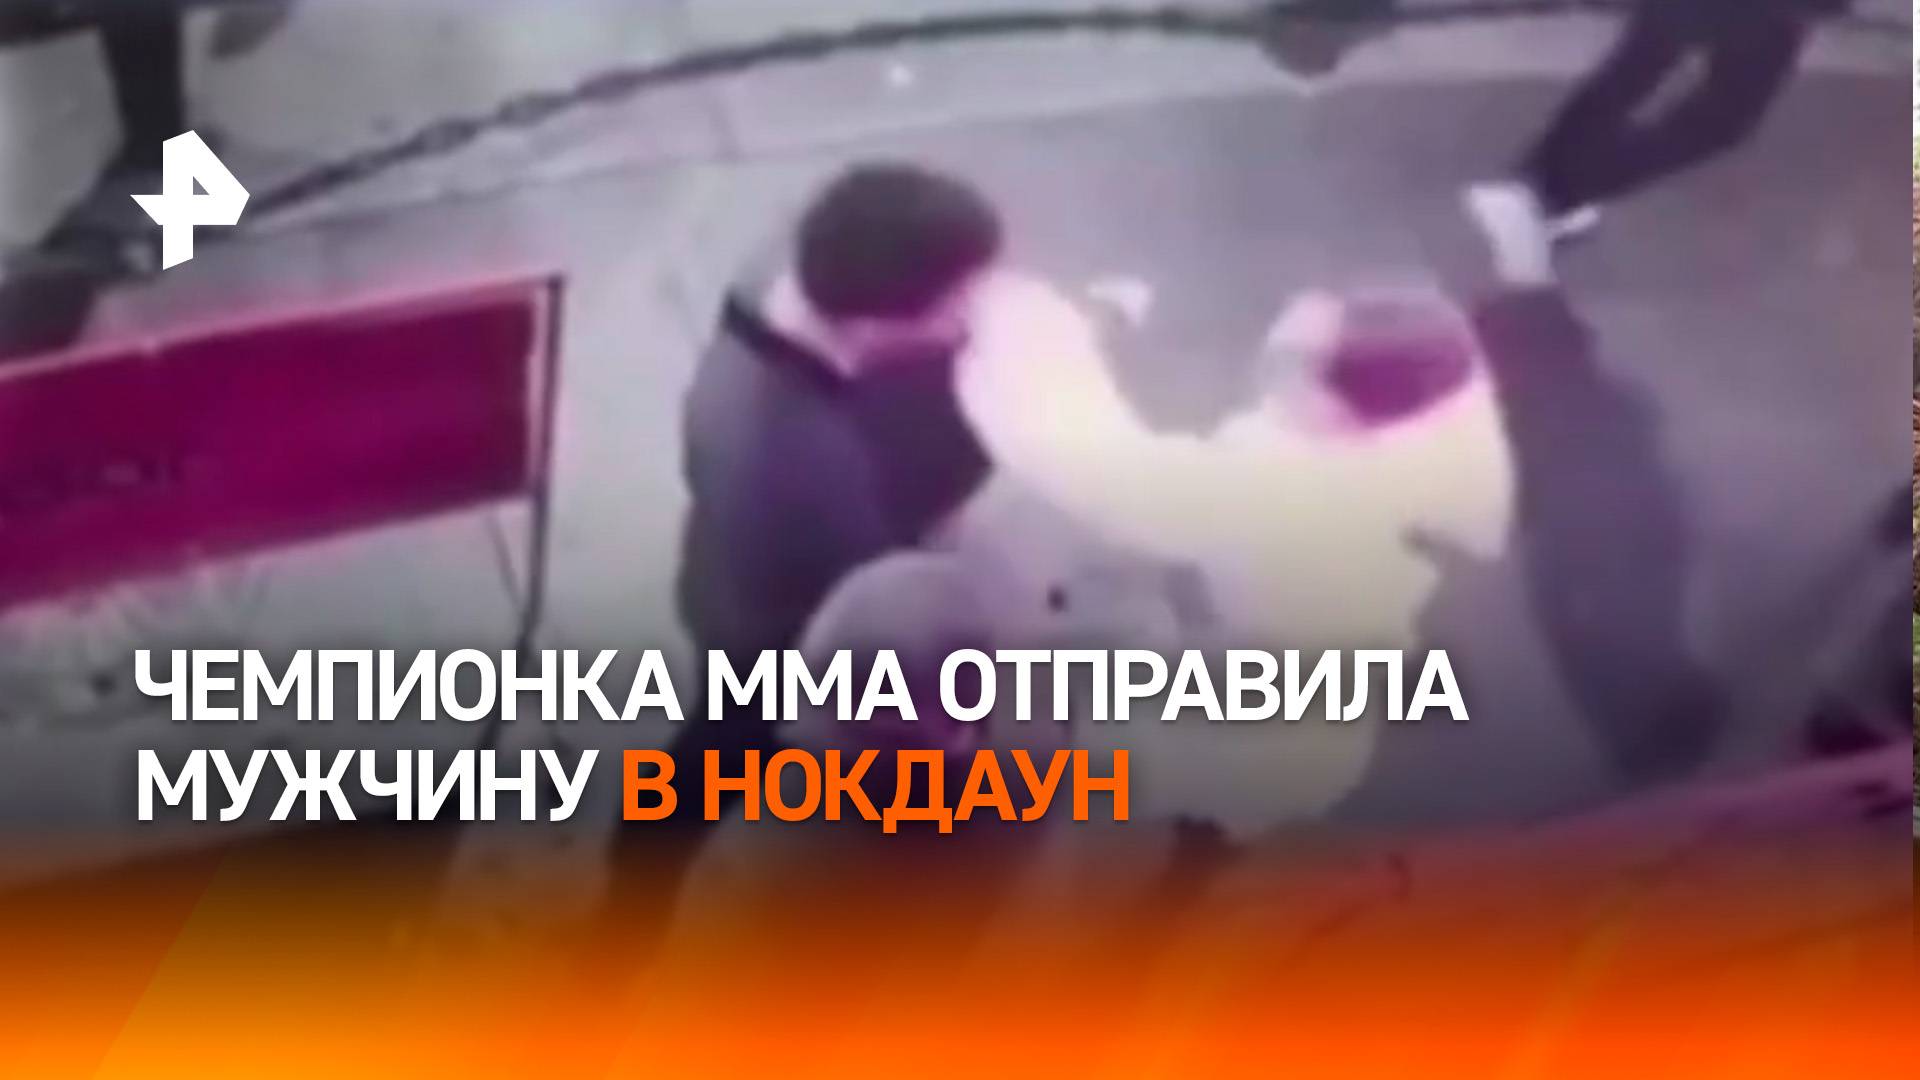 И даже платье не запачкала: мастер ММА отправила в нокдаун надоедливого мужчину в Санкт-Петербурге